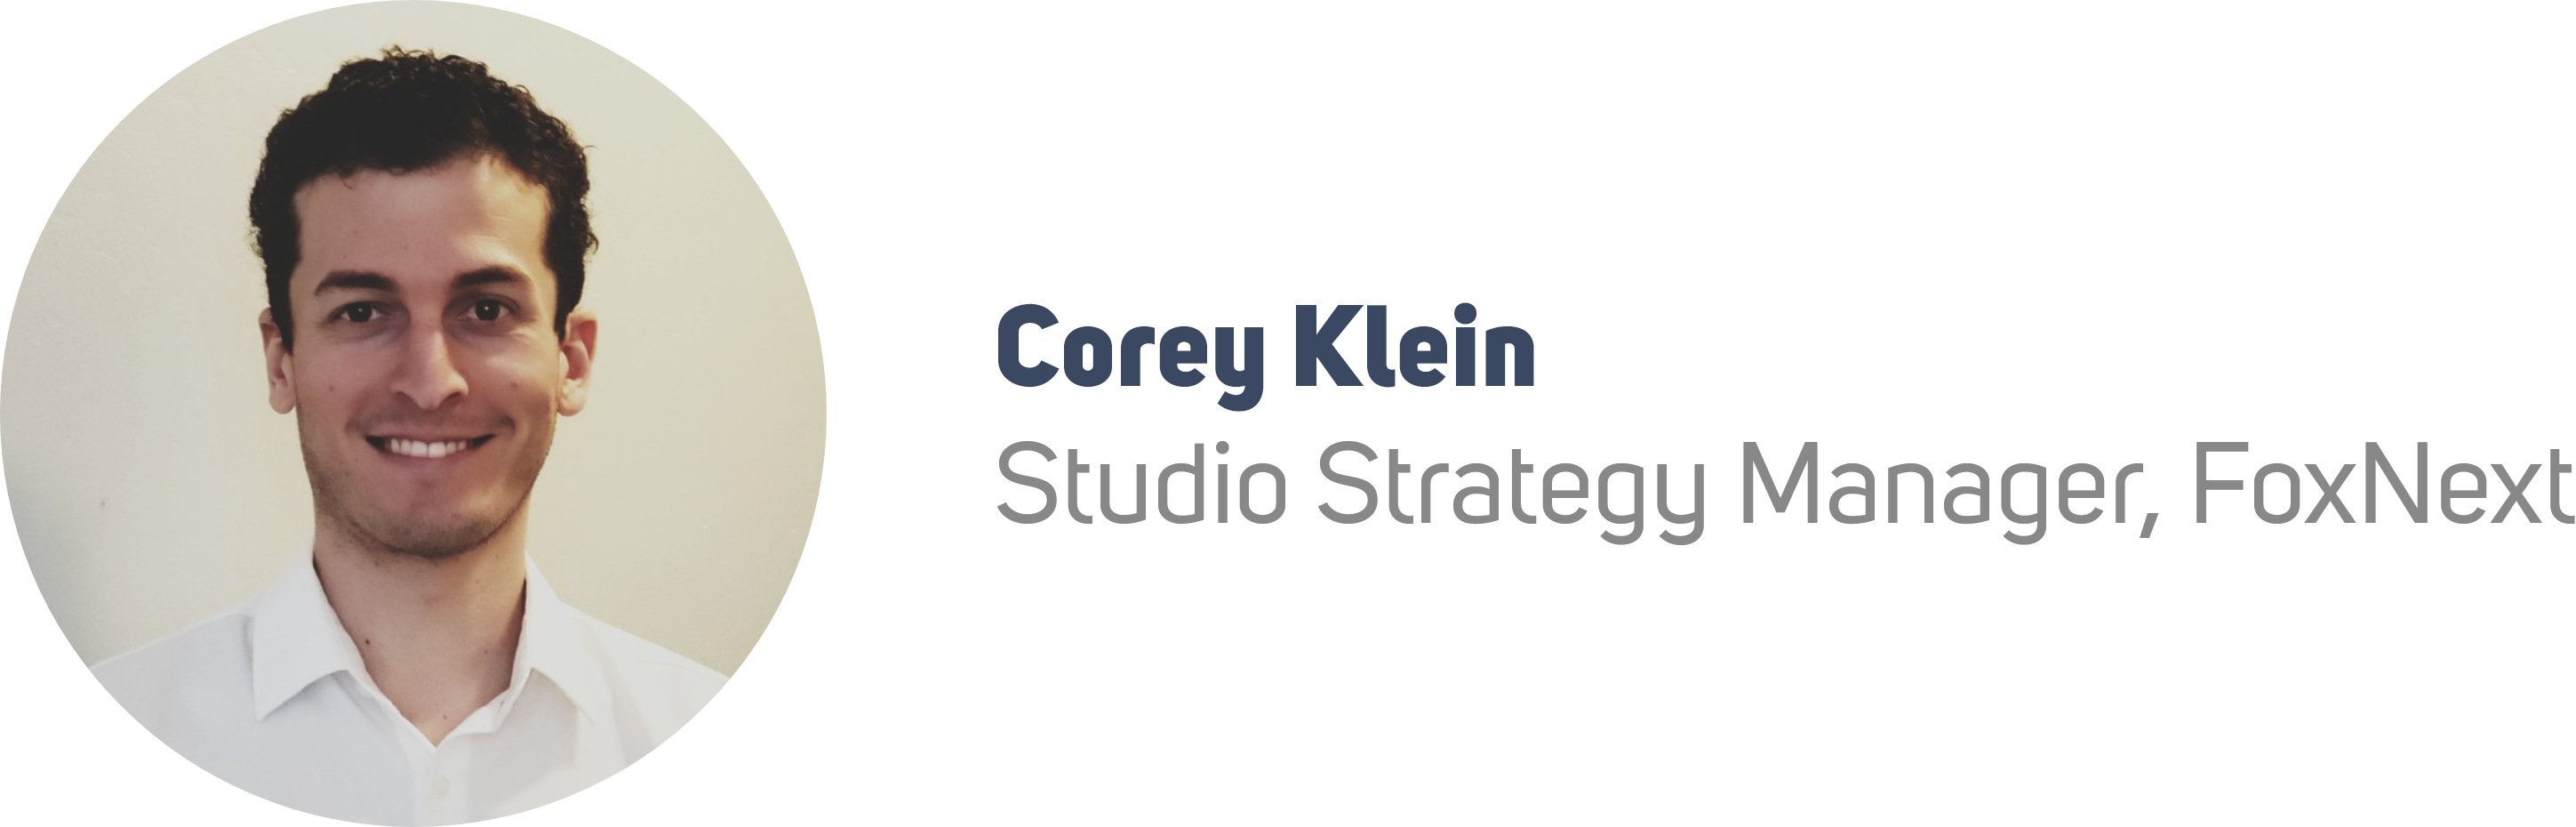 Corey Klein, Studio Strategy Manager at FoxNext